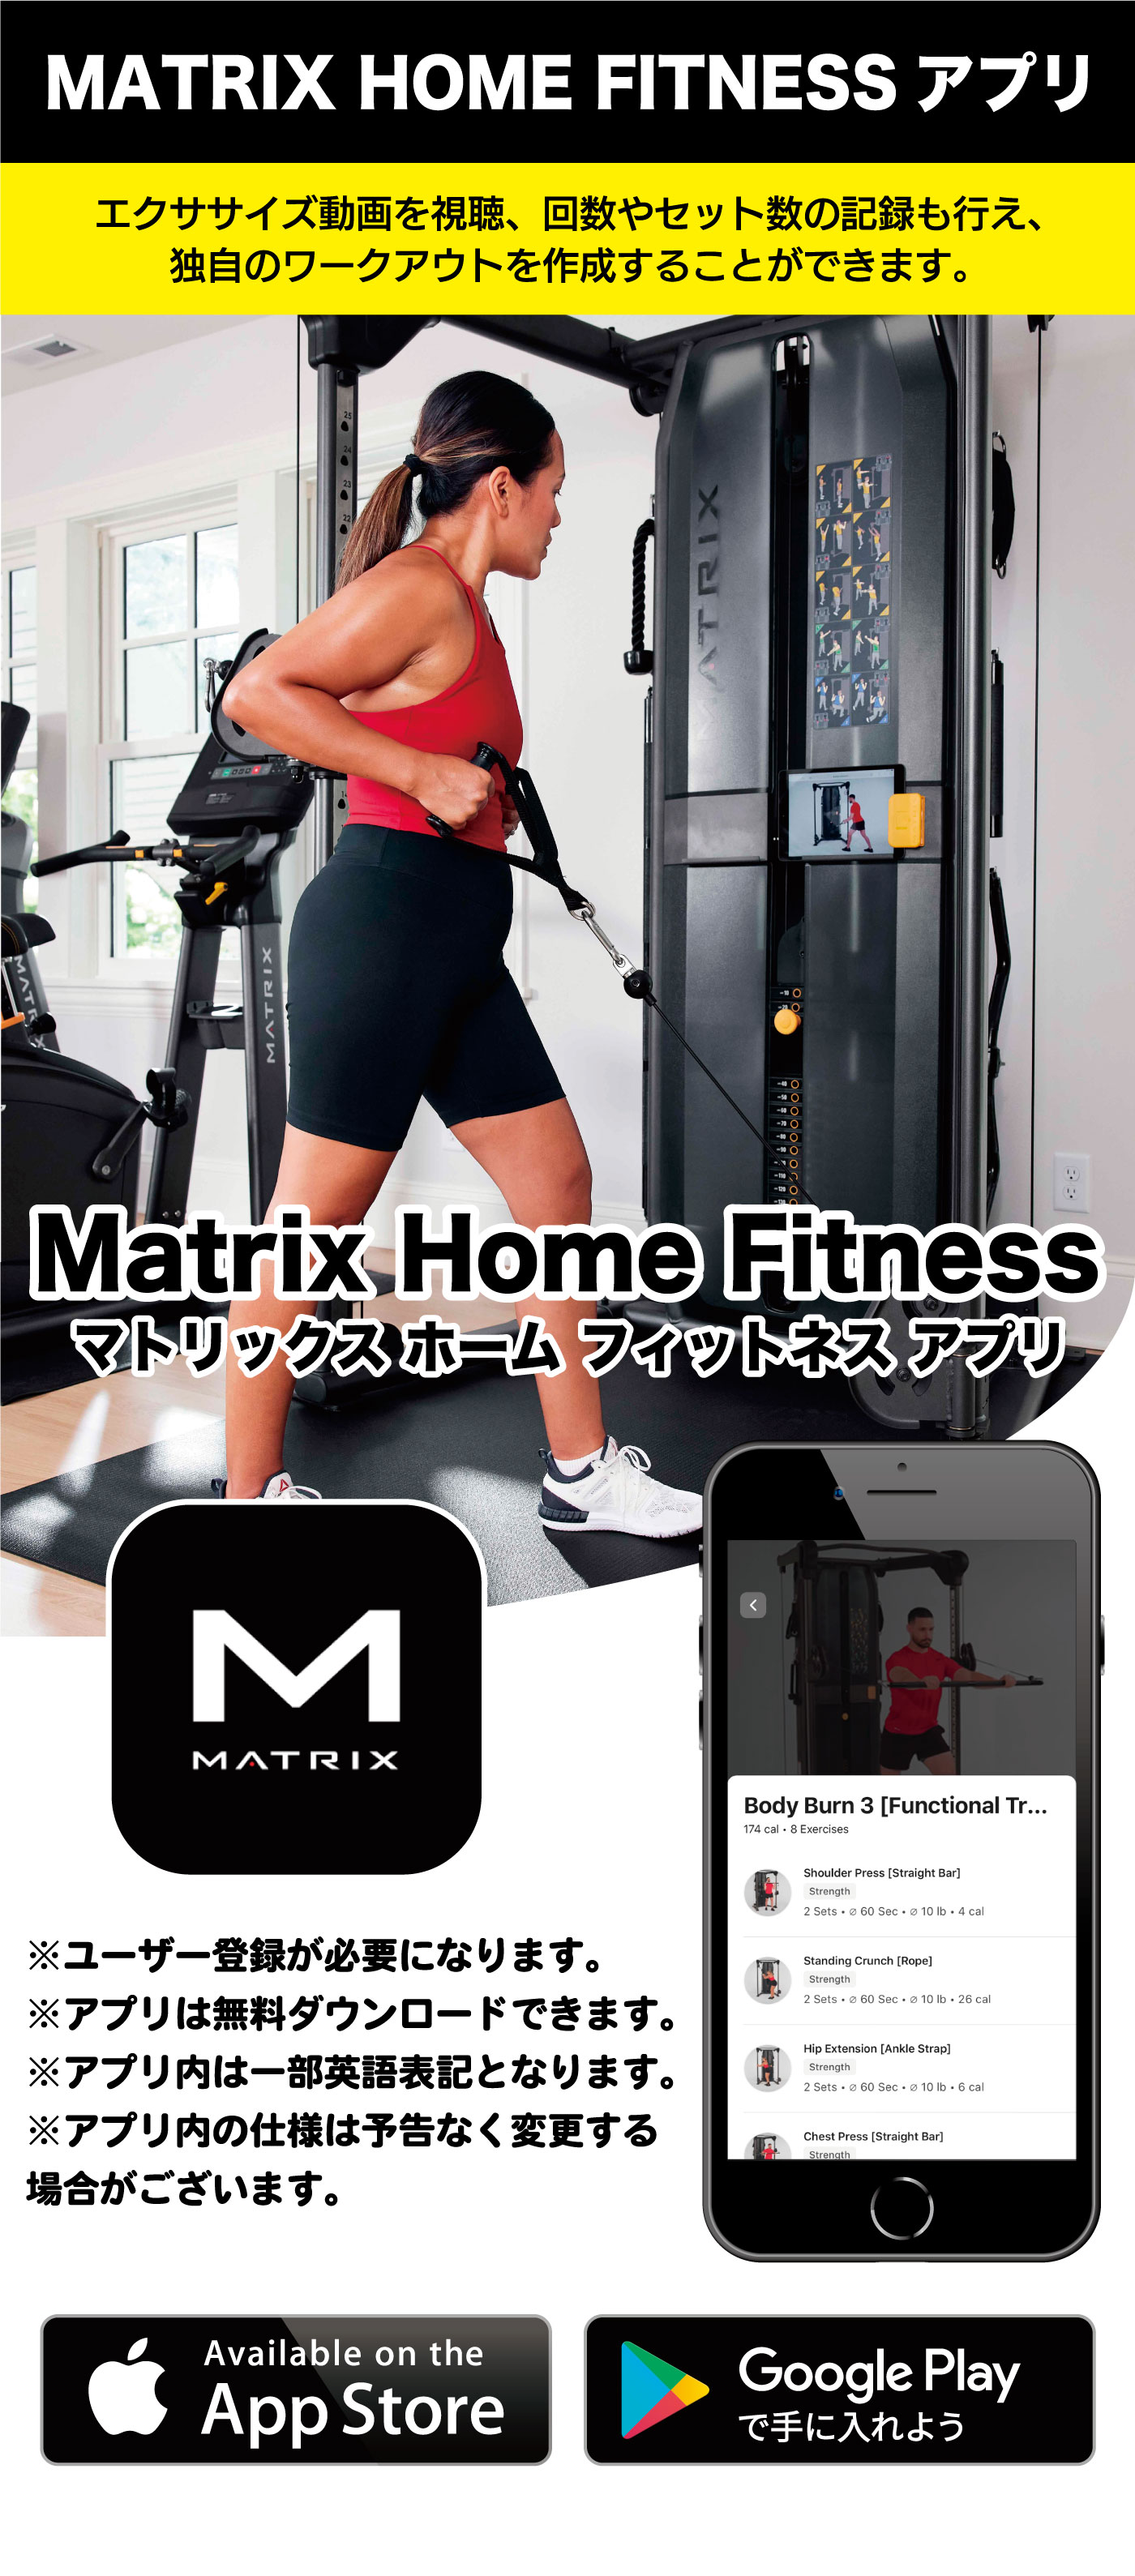 ץ FTR30 Matrix Home Fitness